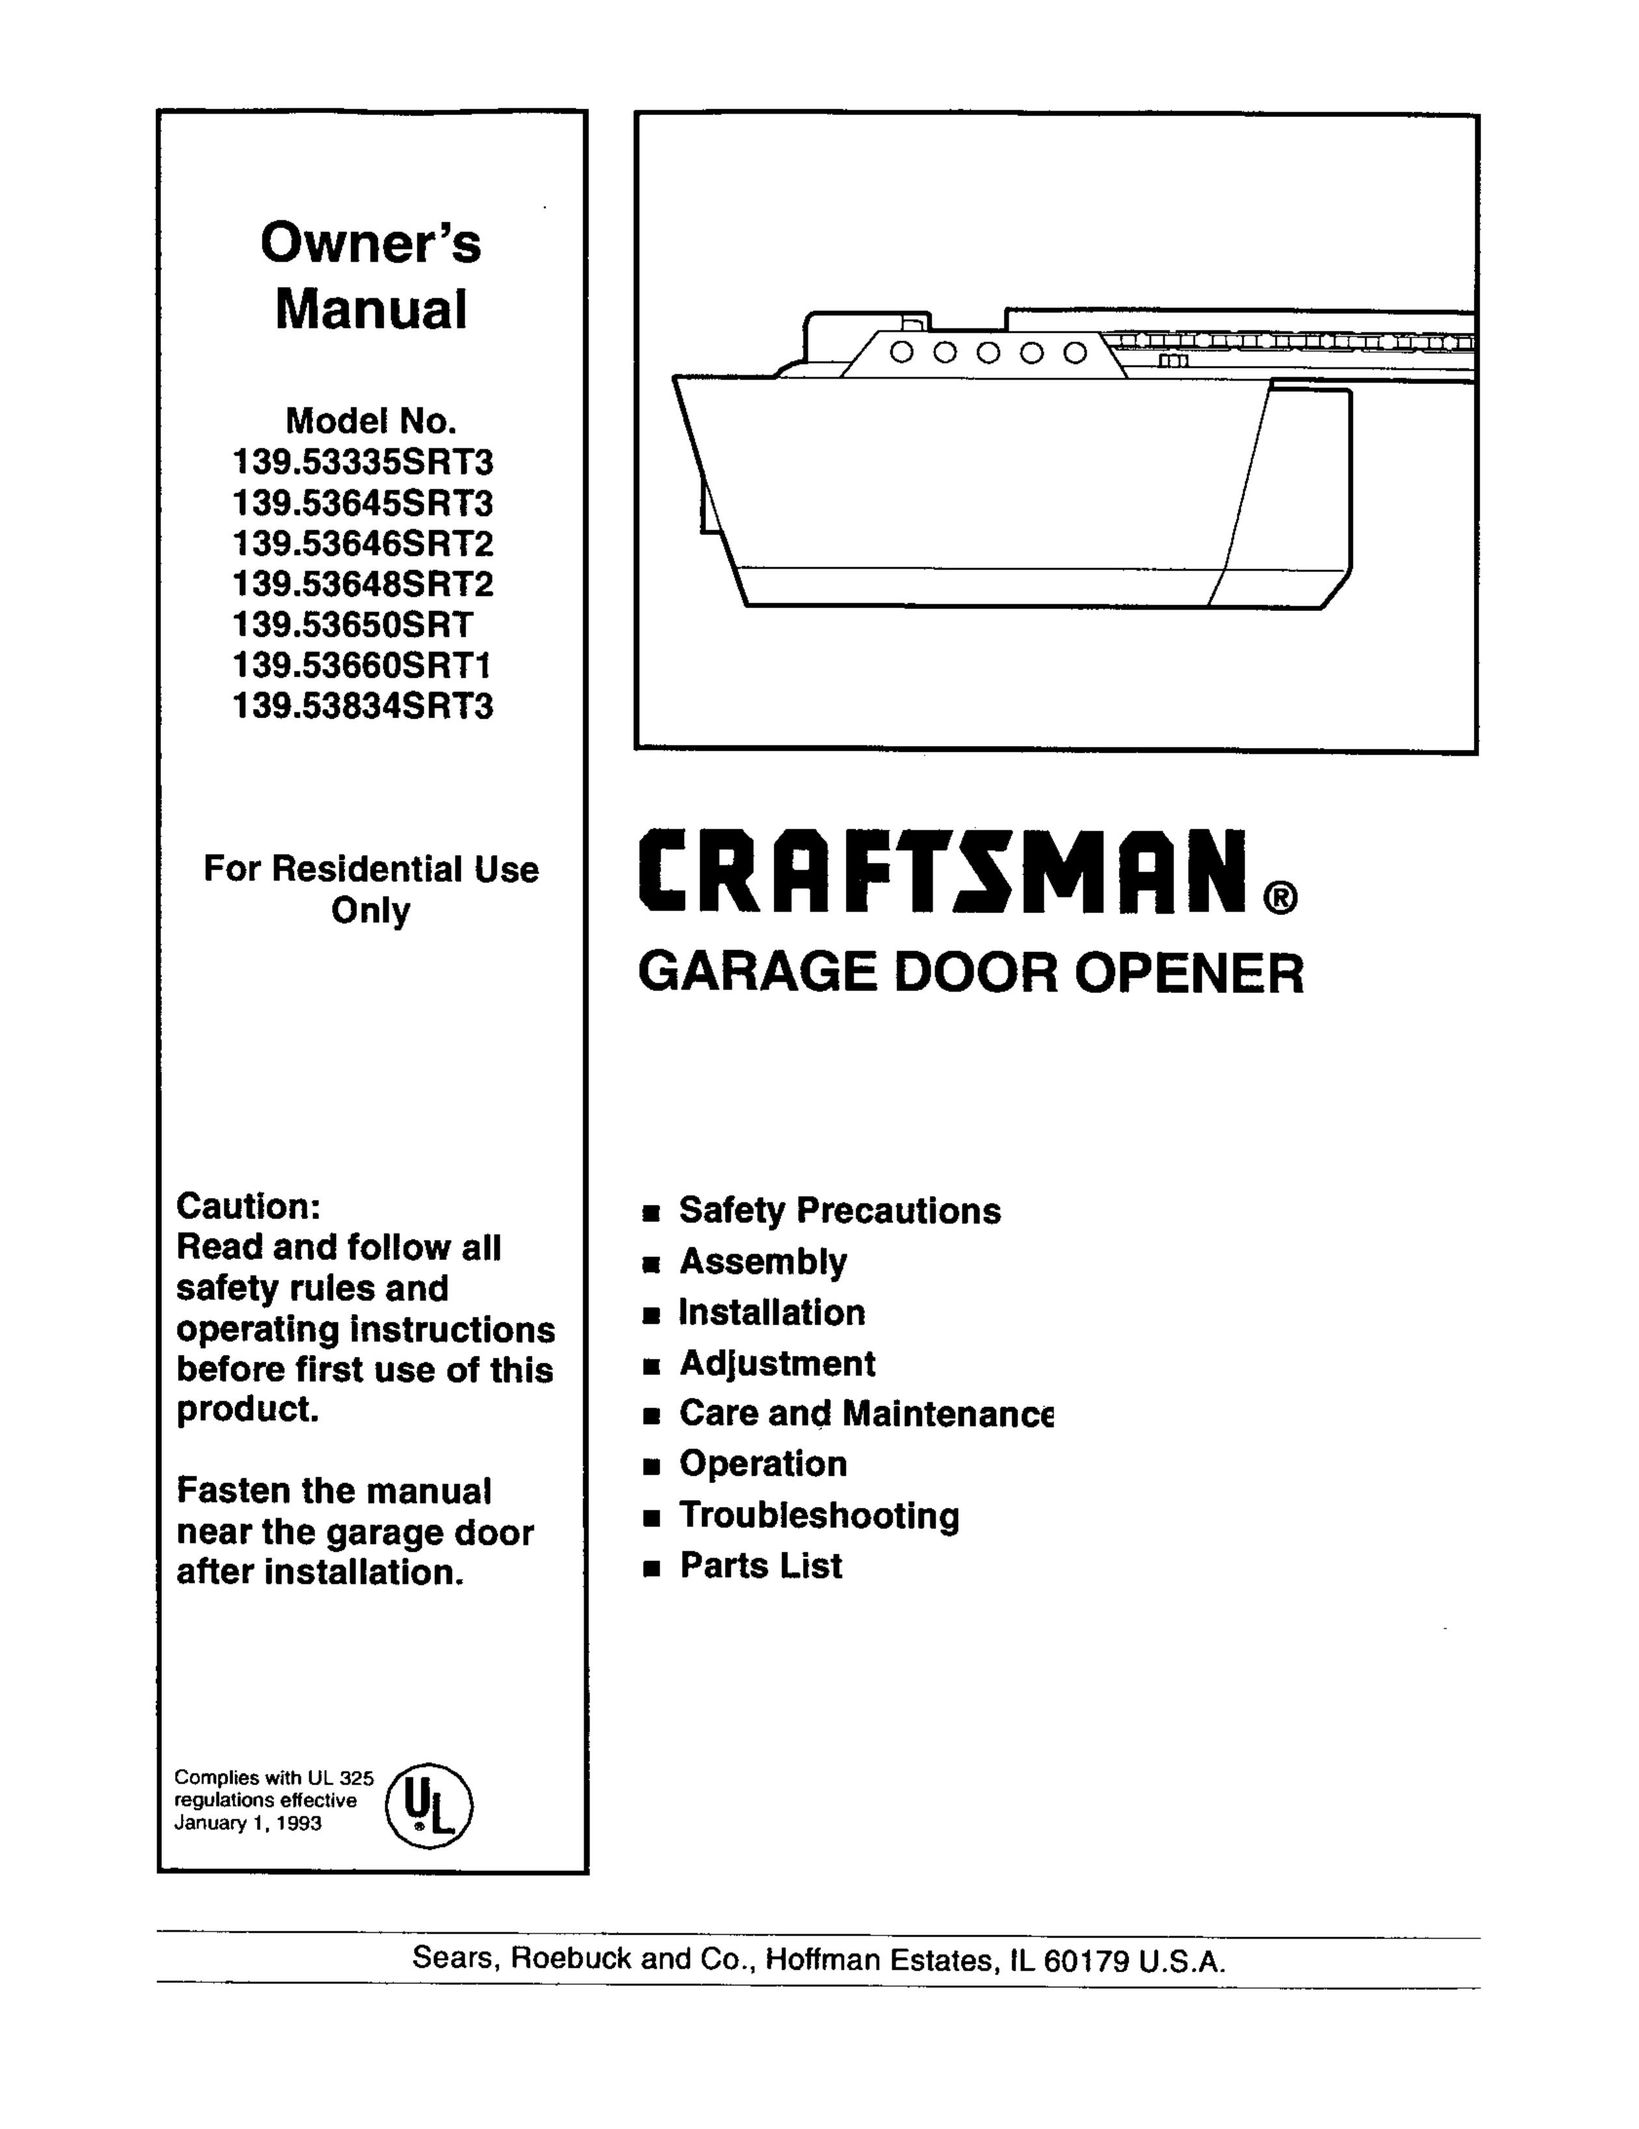 Craftsman 139.53646SRT2 Garage Door Opener User Manual